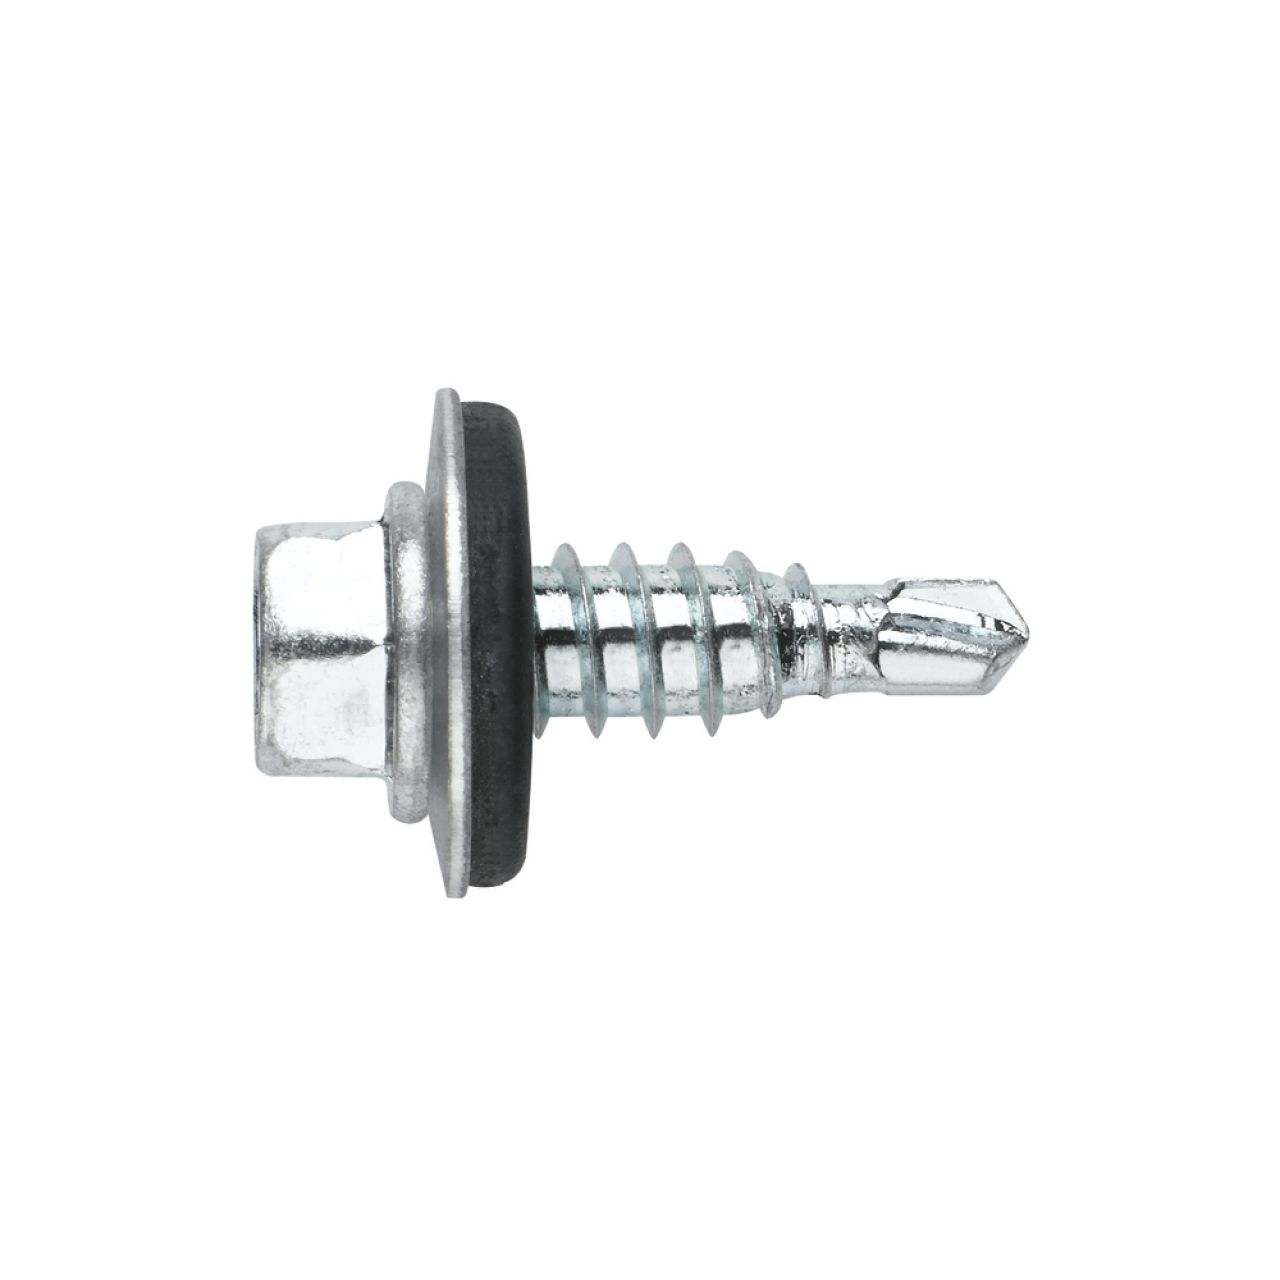 [CP DIN-7504-K RE + ARVUL] Tornillo autotaladrante de punta reducida y cabeza hexagonal de 8 mm. Tornillo con arandela vulcanizada de acero-EPDM